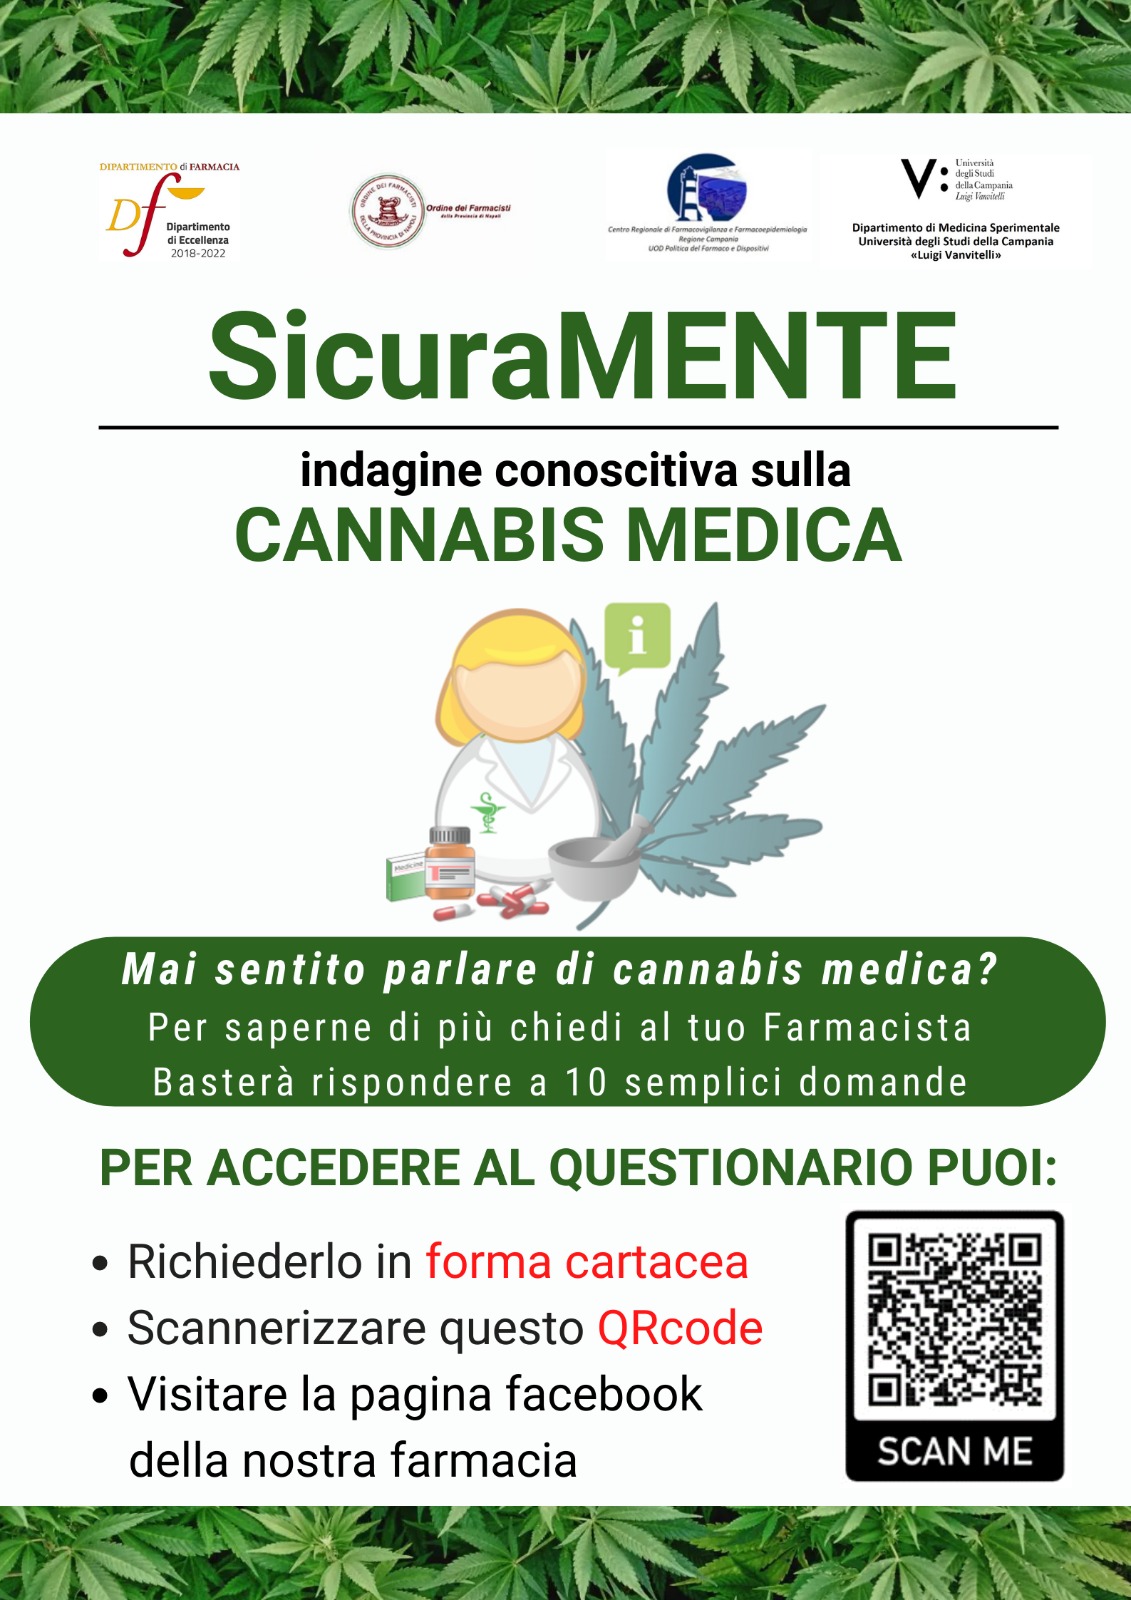 Questionario Cannabis Medica